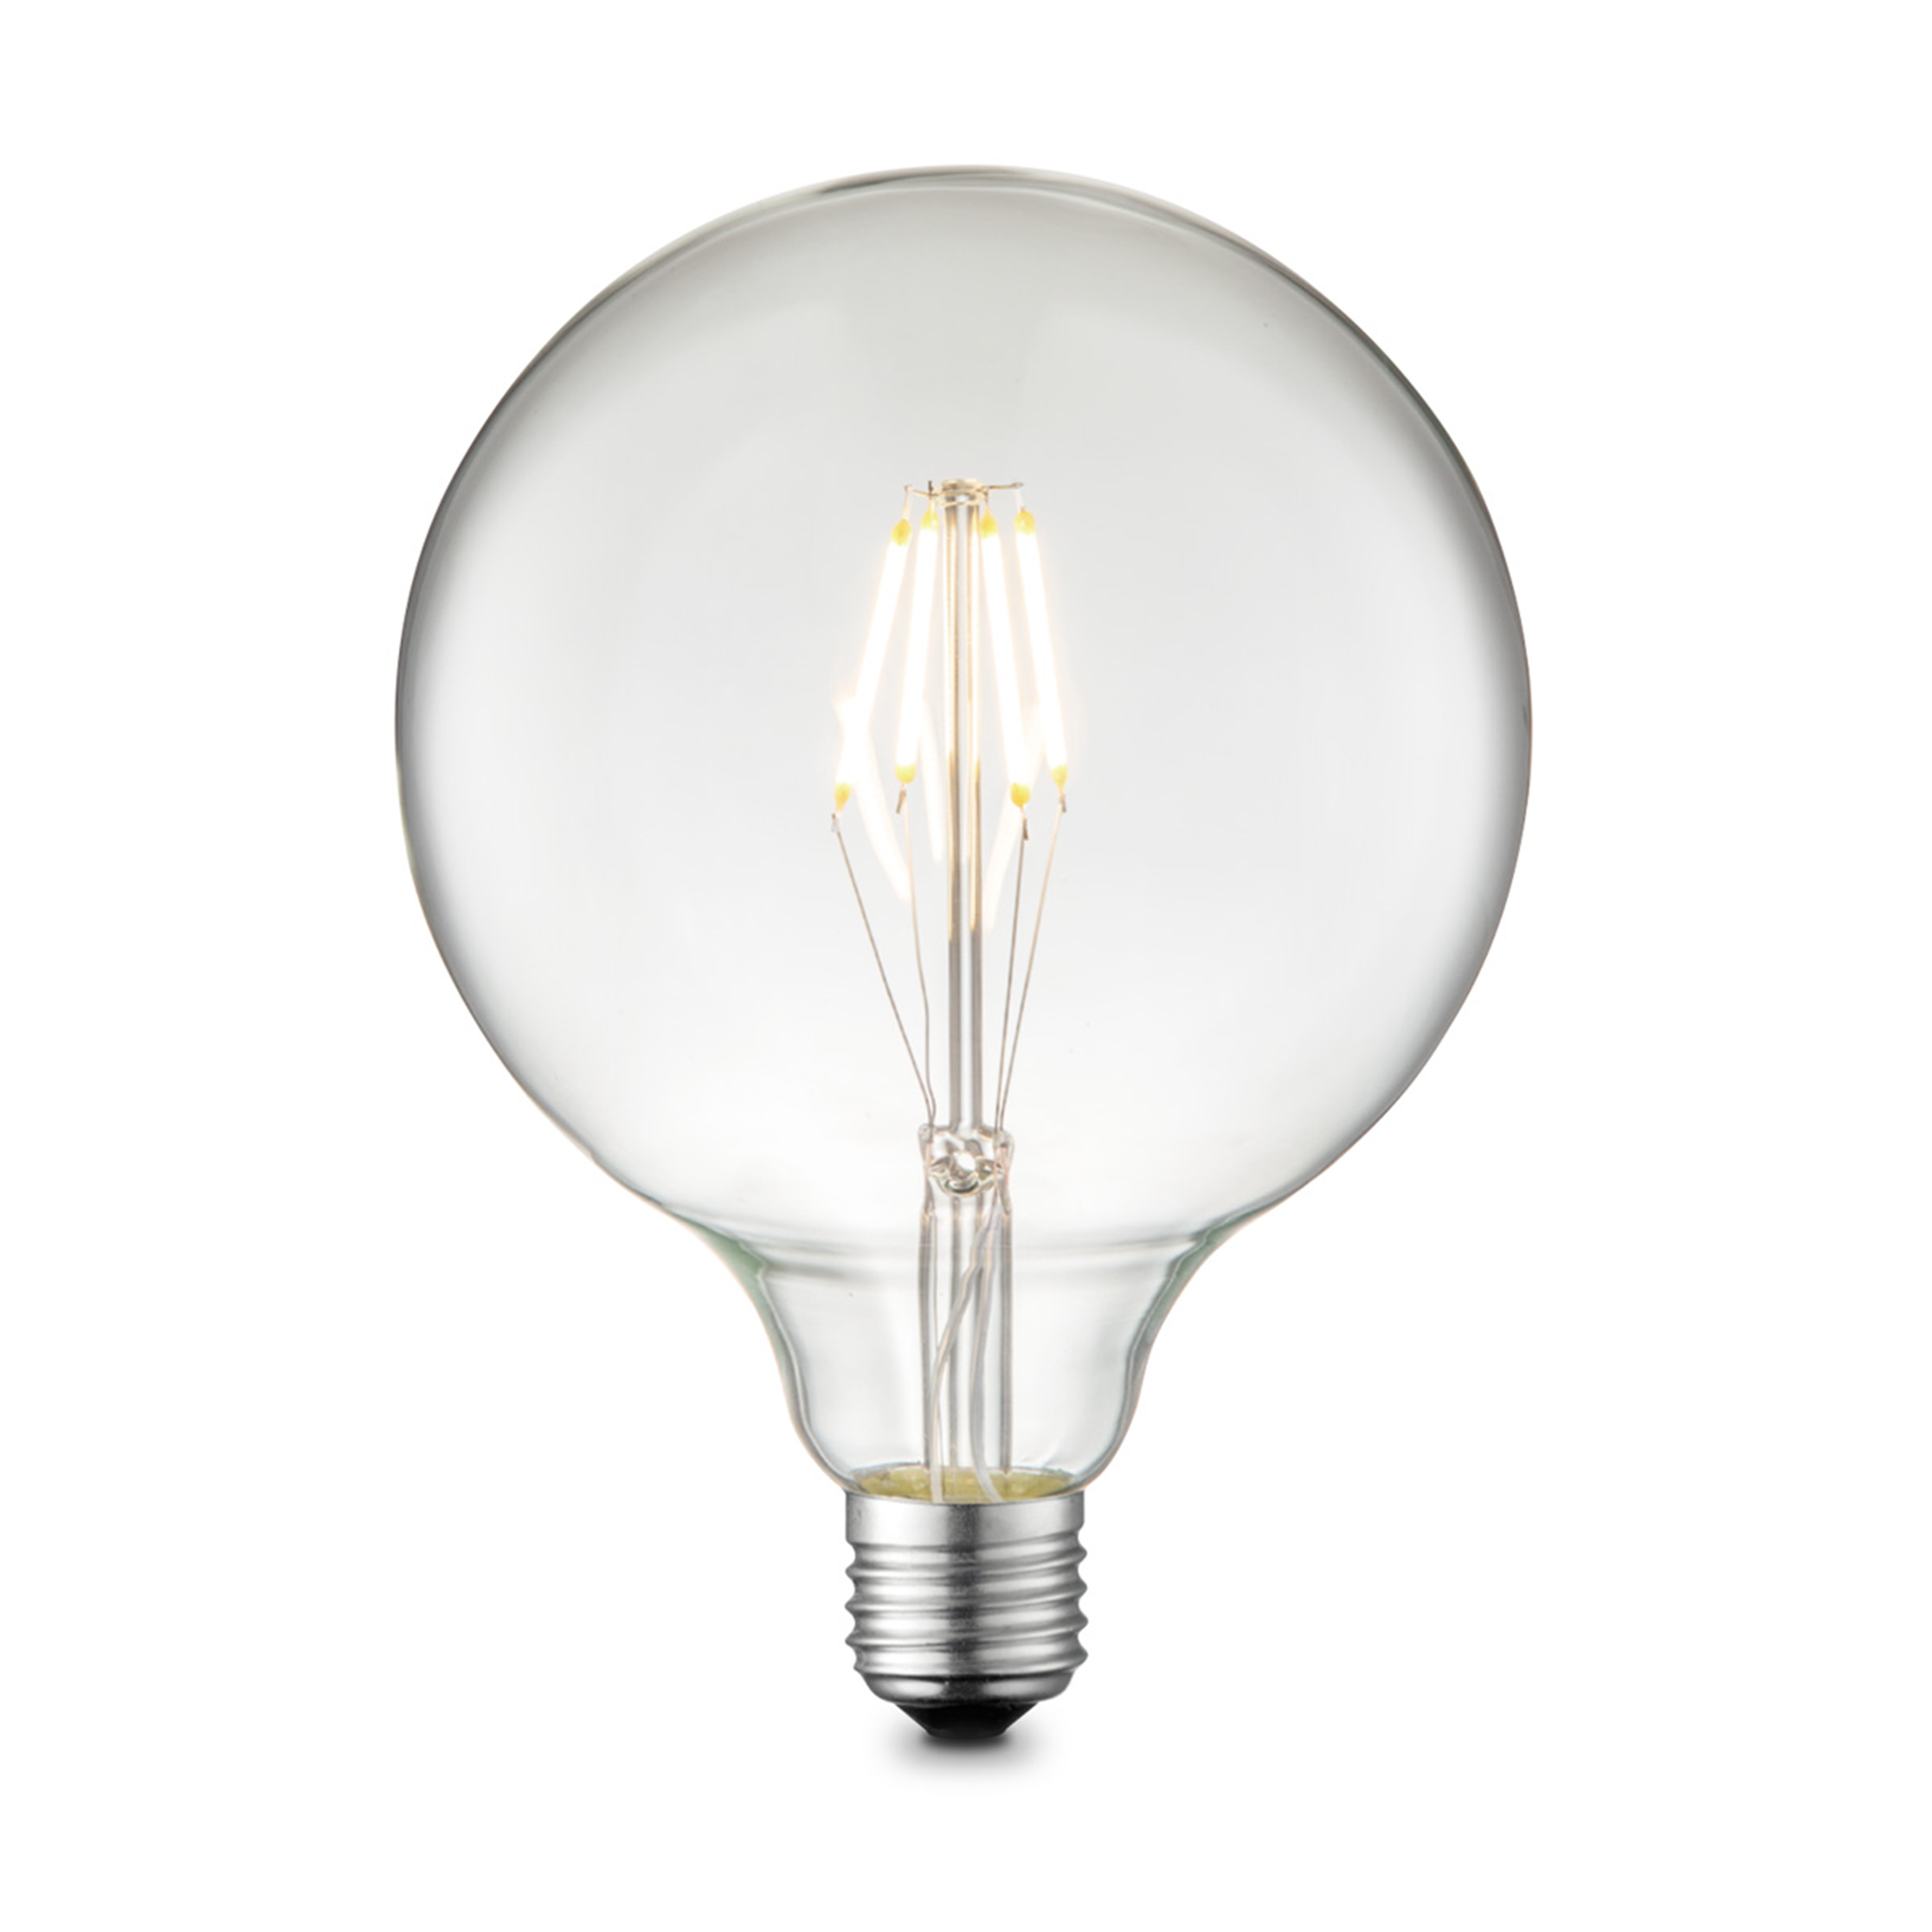 LED-Leuchtmittel 'Carbon A' klar E27 4W 400 lm dimmbar + product picture